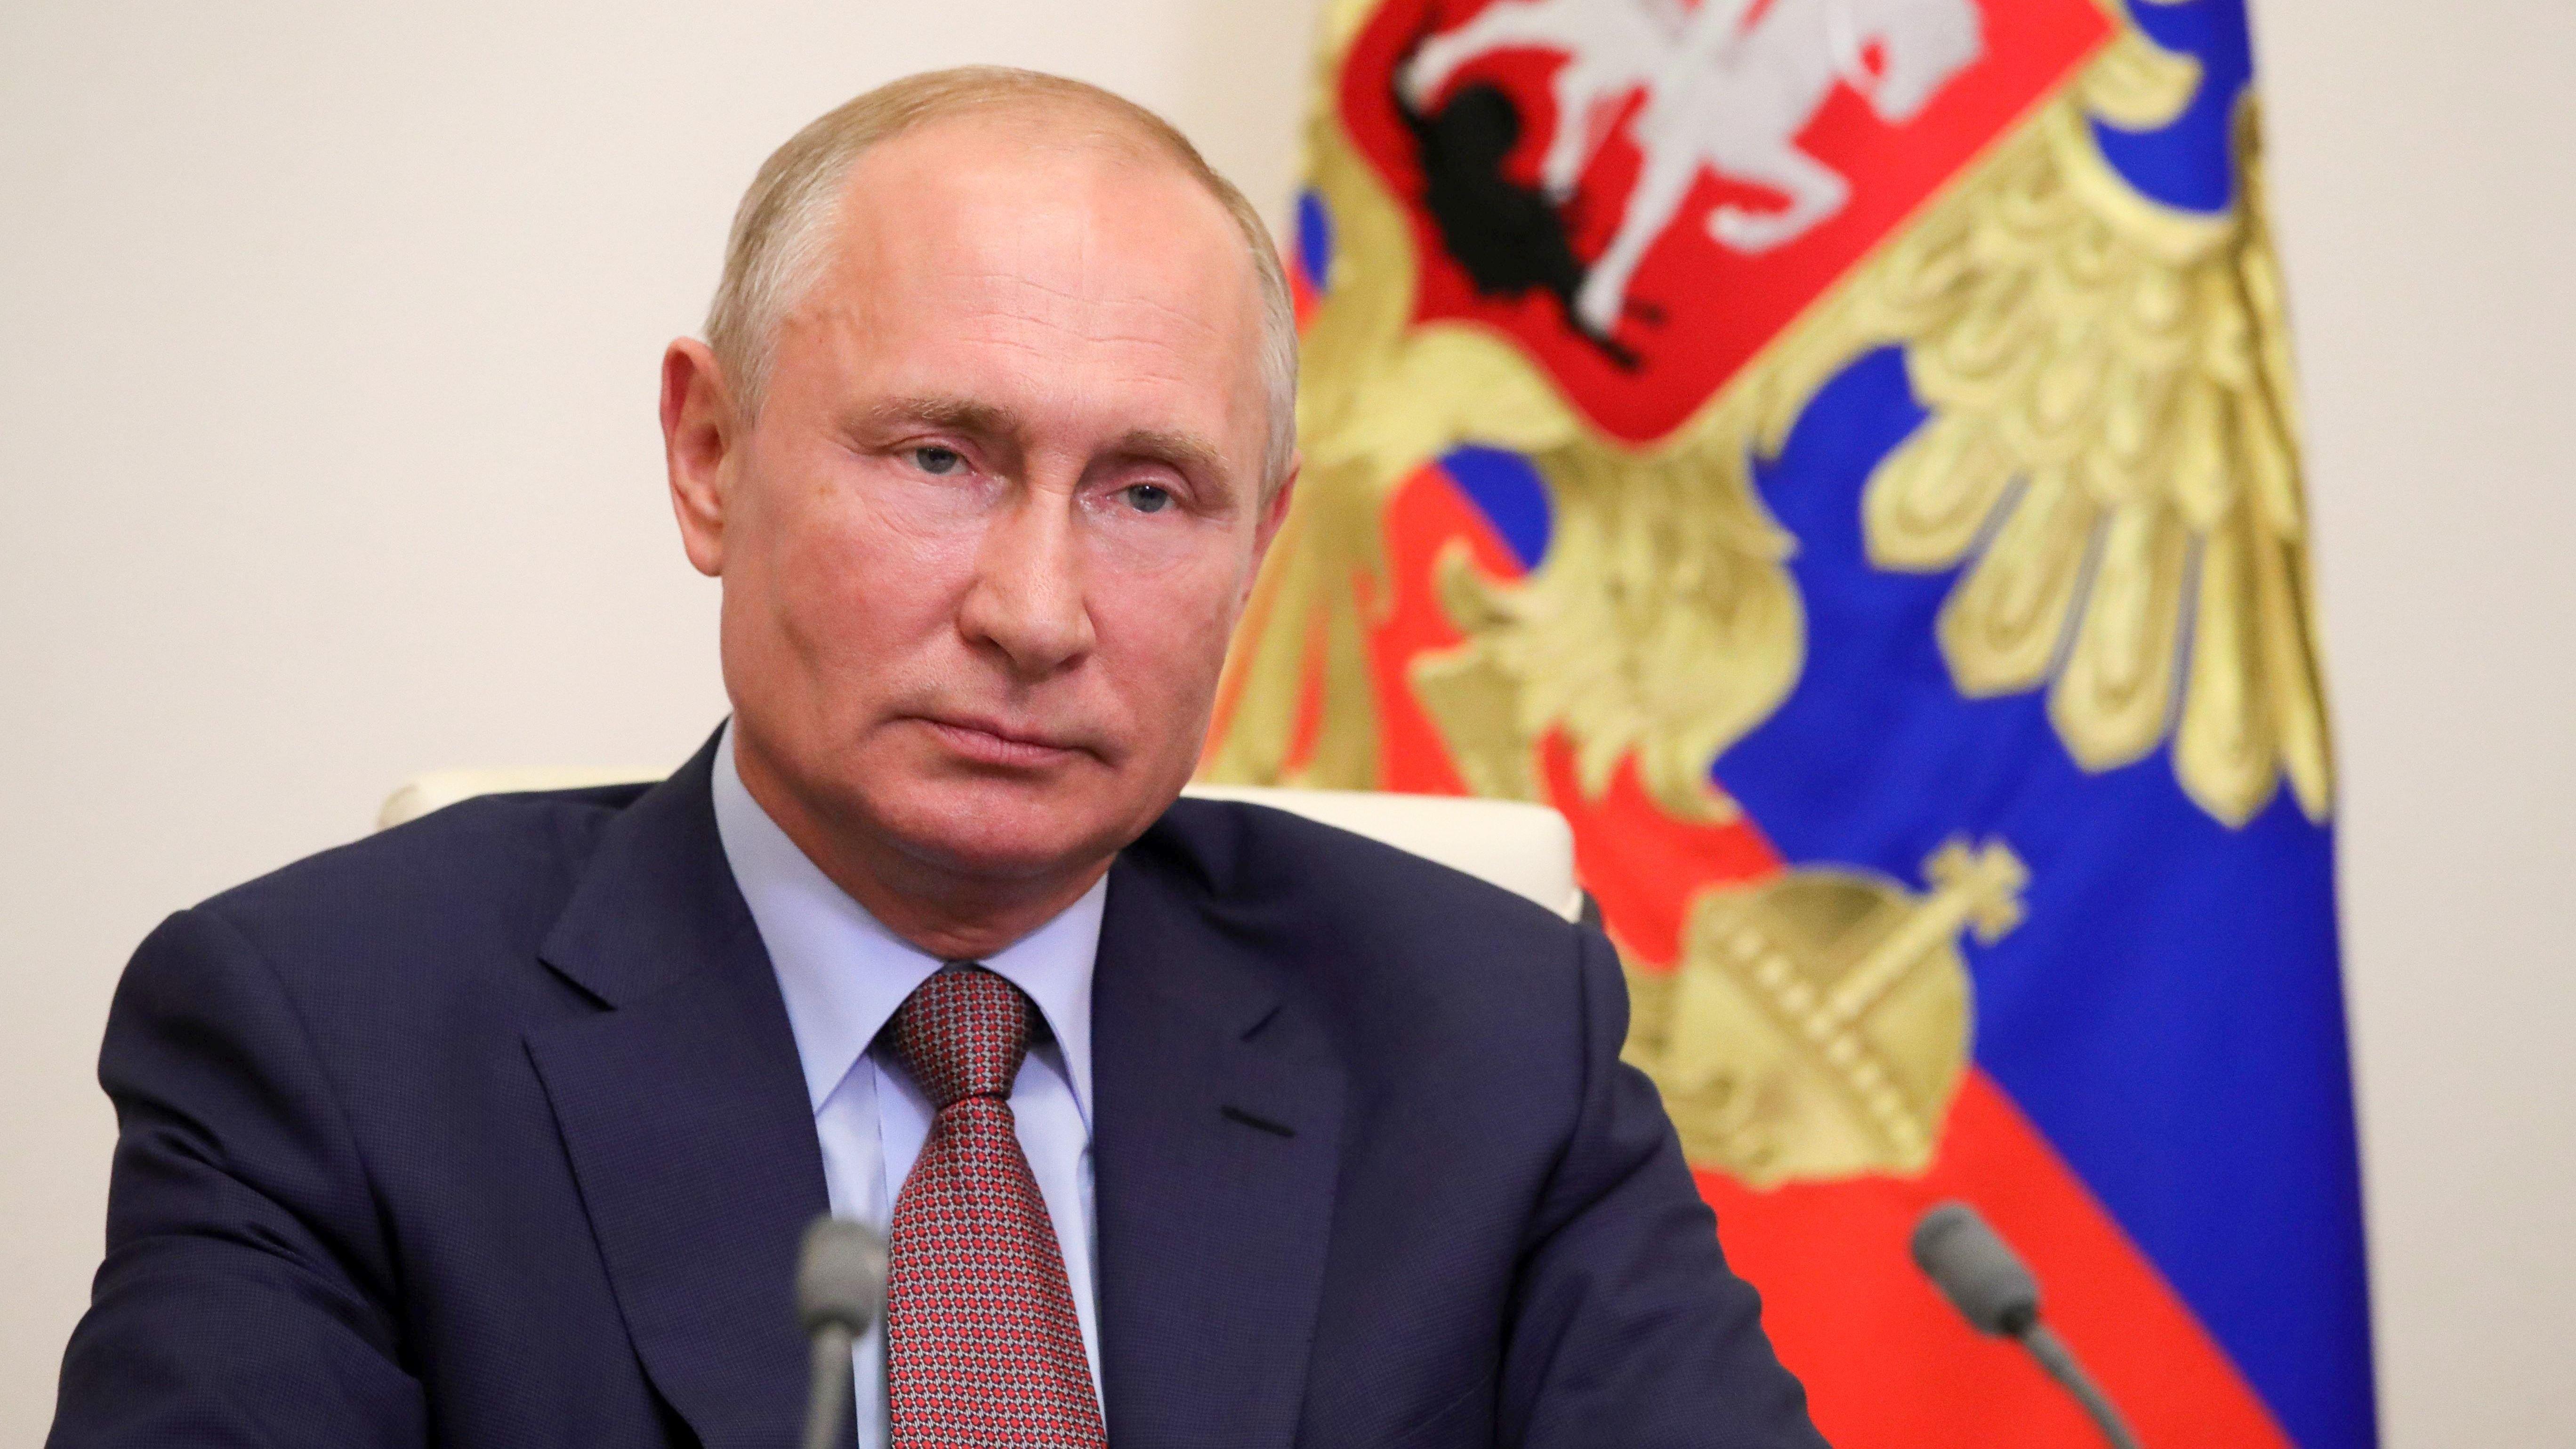 Vladimir Putin in suit close up